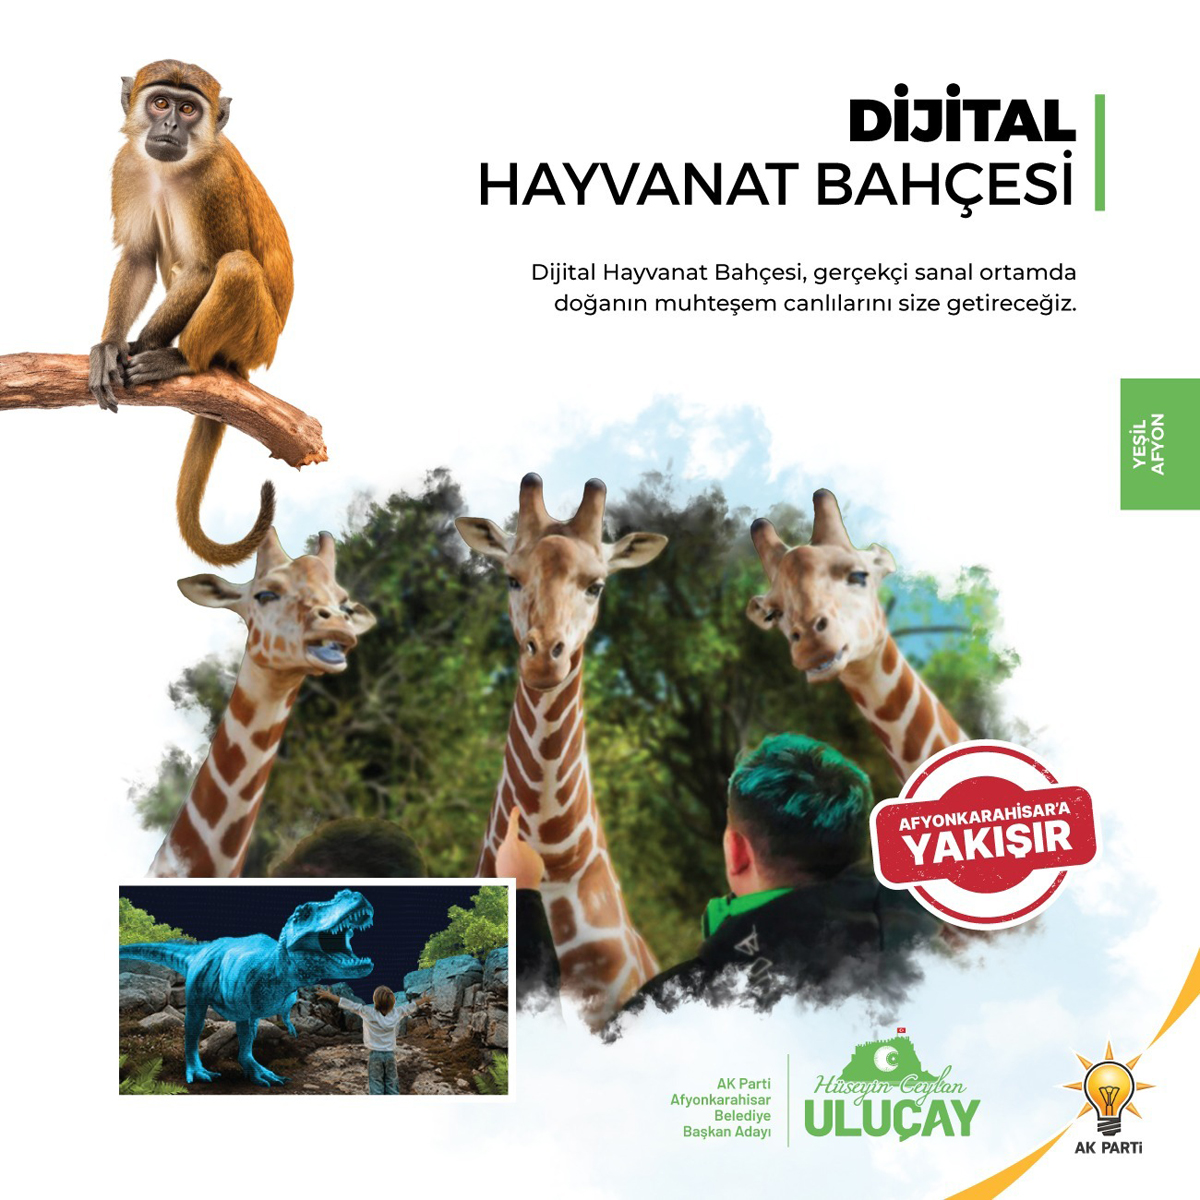 “Dijital Hayvanat Bahçesi Projemiz Şehrimizi Cazip Hale Getirecek”